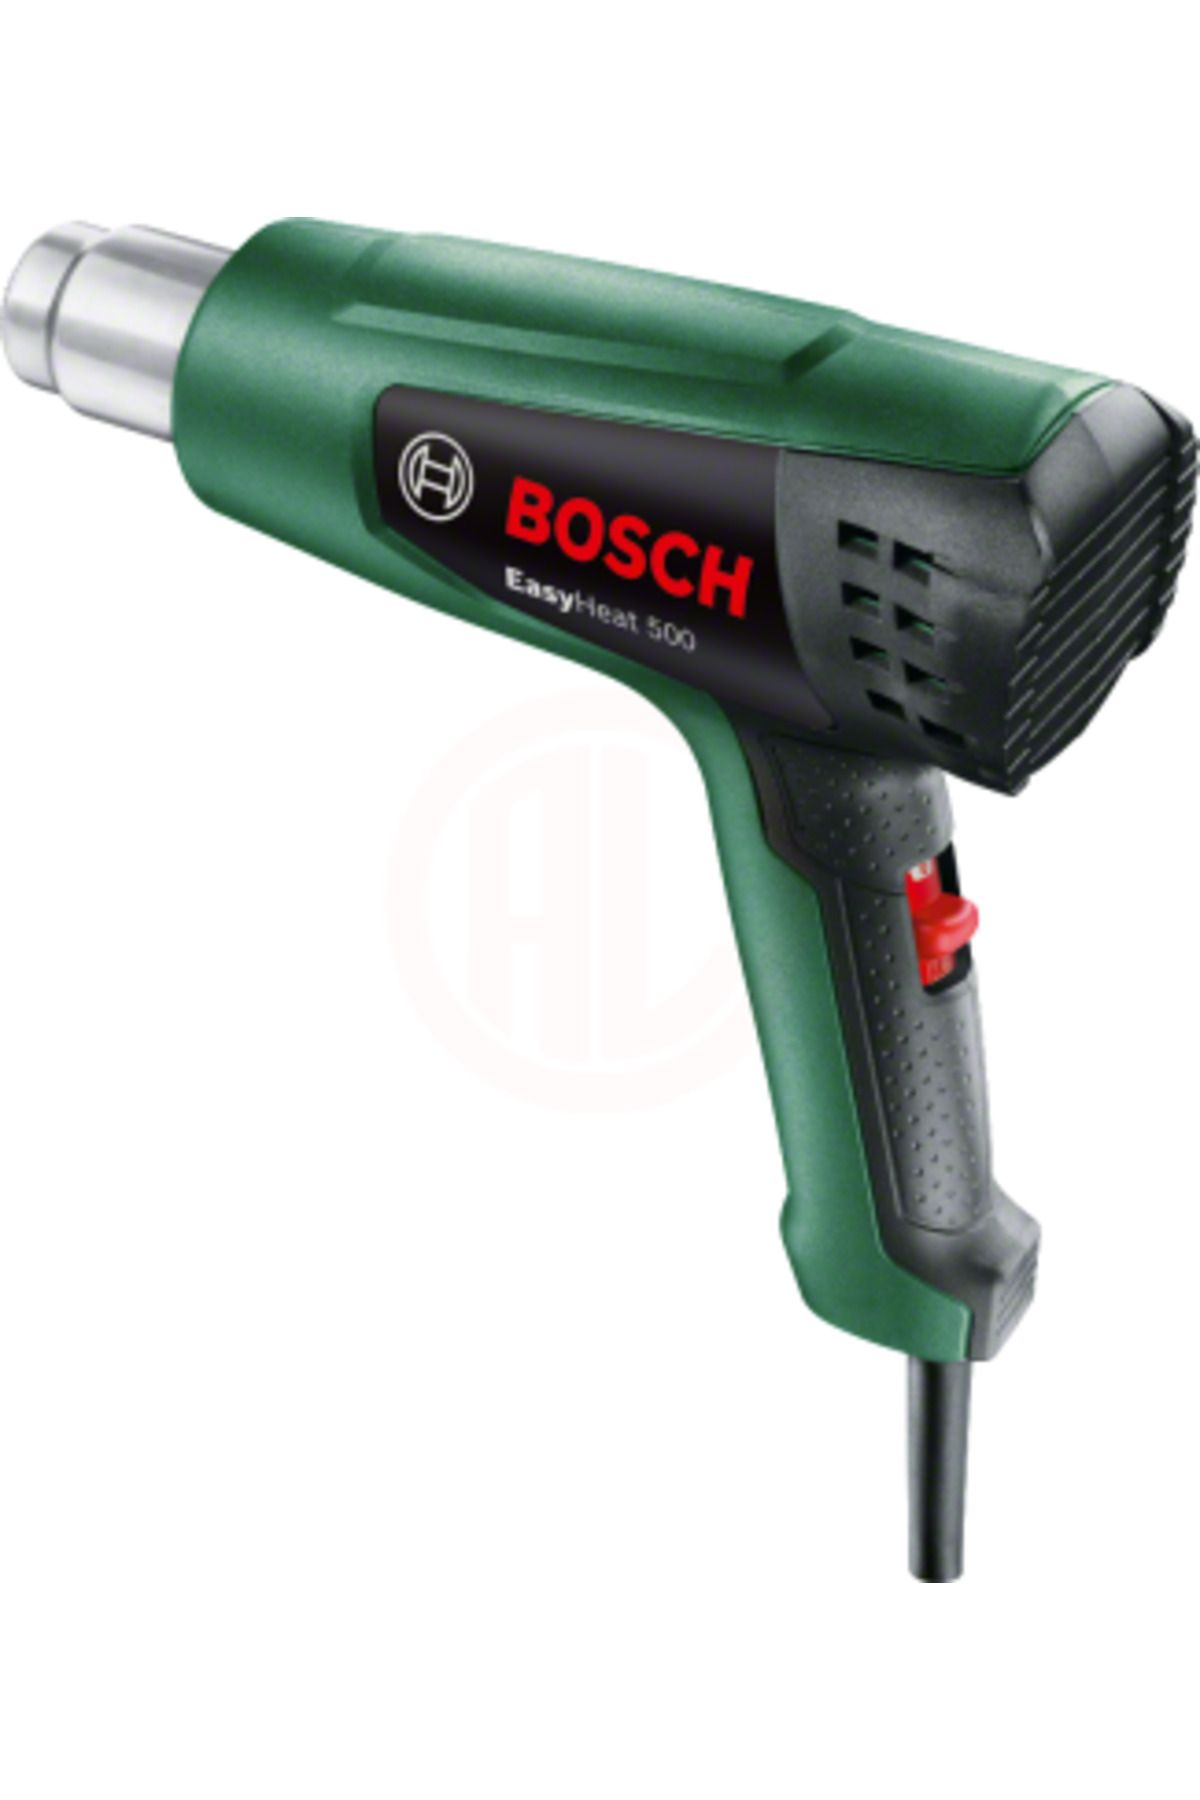 Bosch Sıcak Hava Tabancası Easyheat 500 - 06032a6000